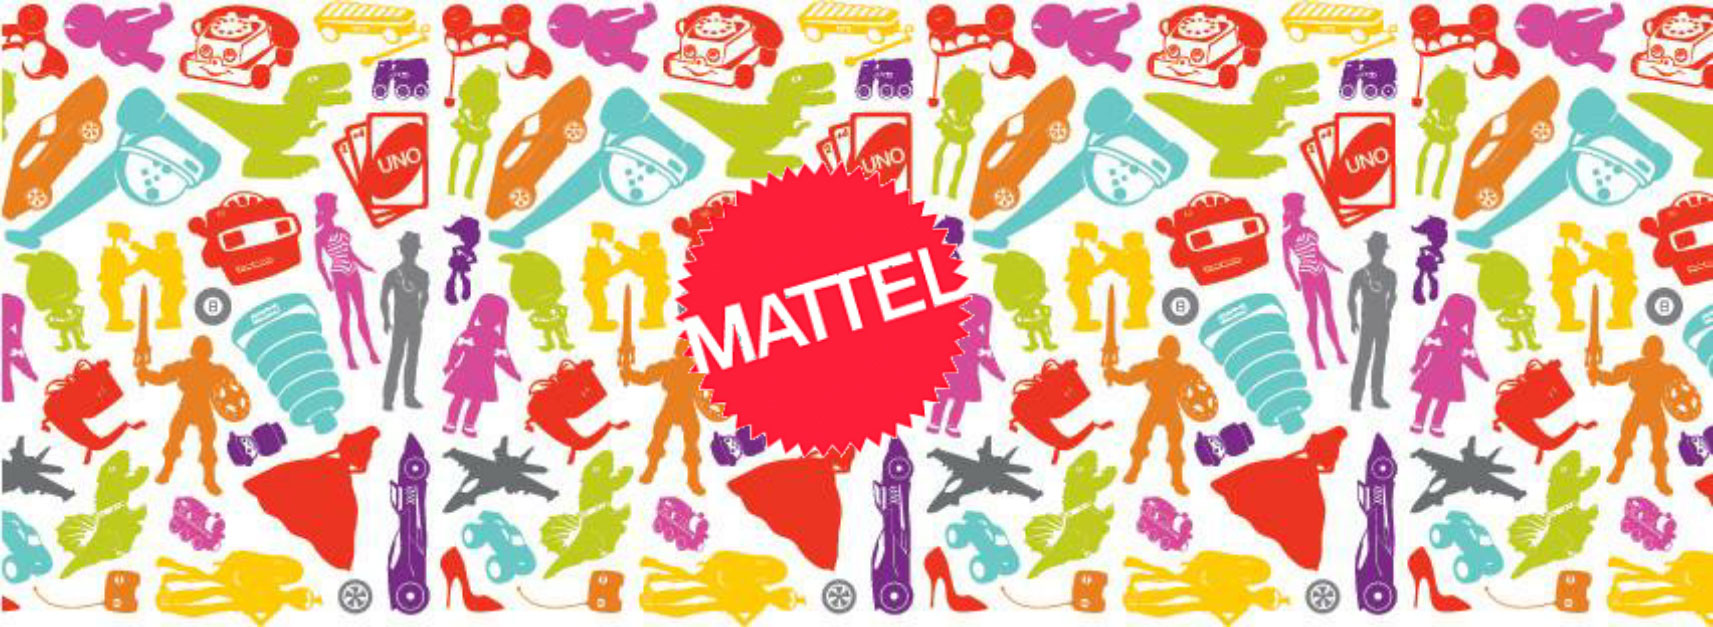 Mattel:una delle più grandi case produttrici di giocattoli al mondo.